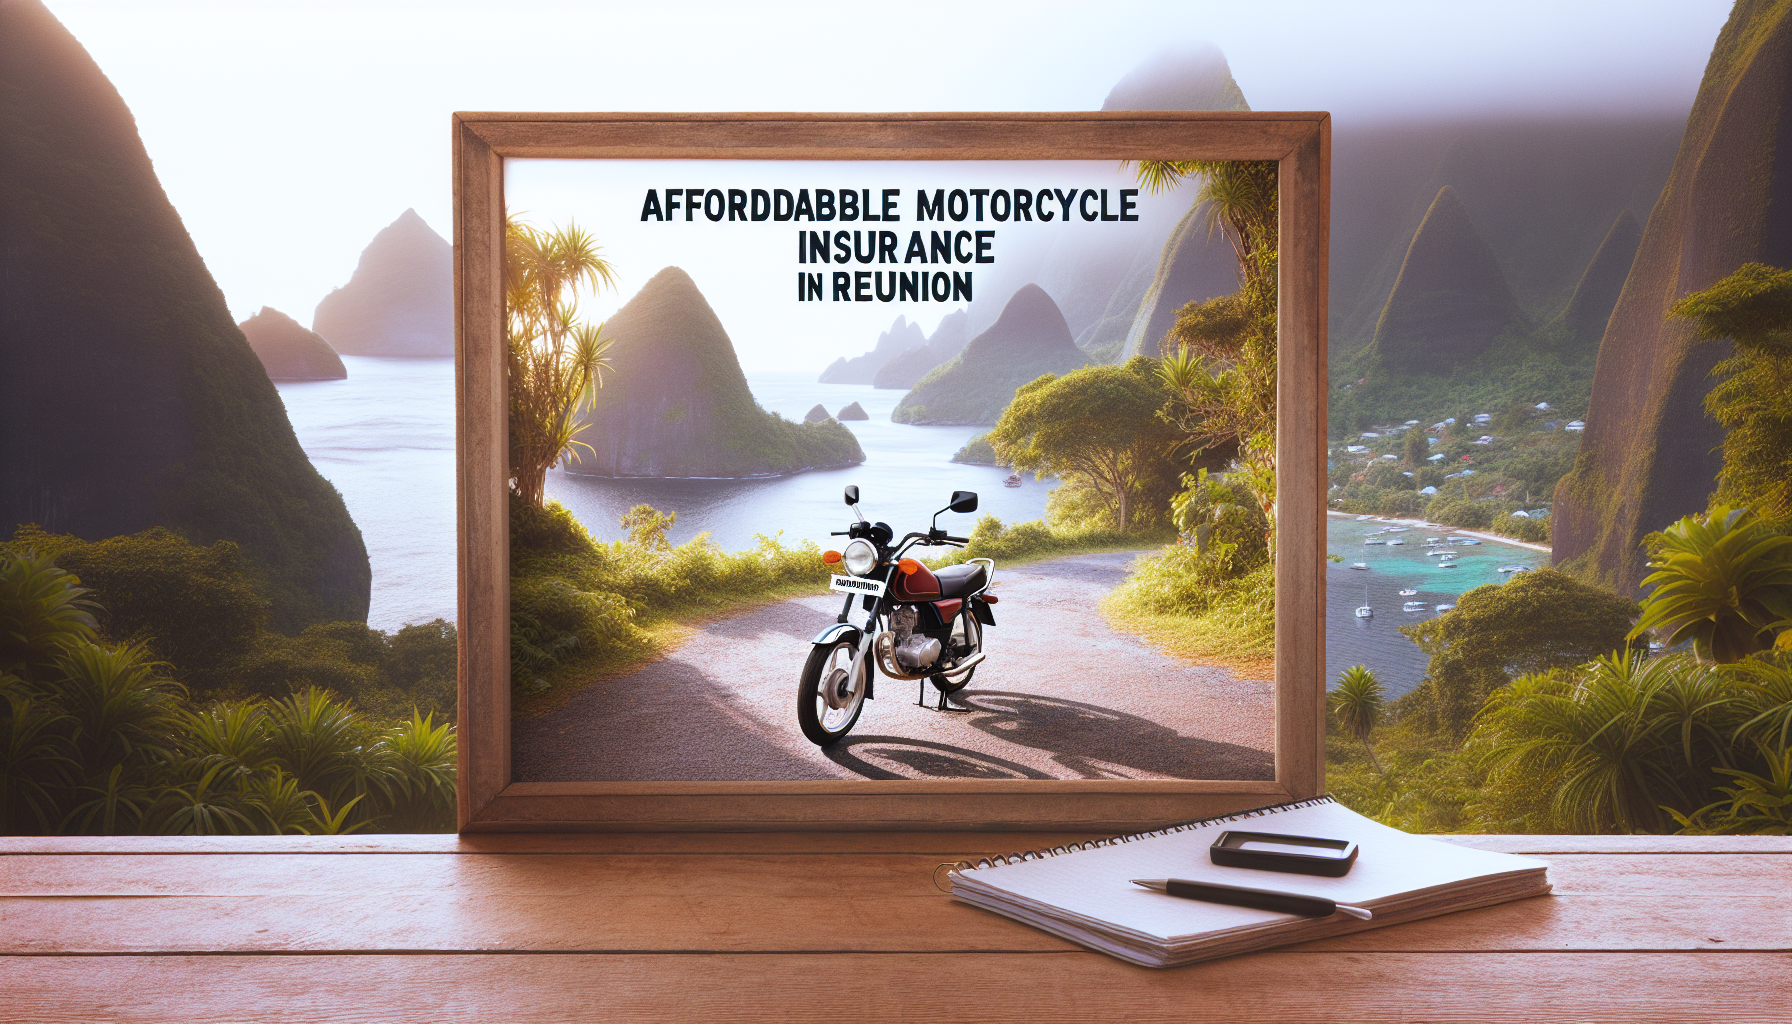 trouvez une assurance moto pas cher à la réunion avec notre offre d'assurance moto à la réunion. profitez de nos tarifs avantageux pour assurer votre moto à la réunion.